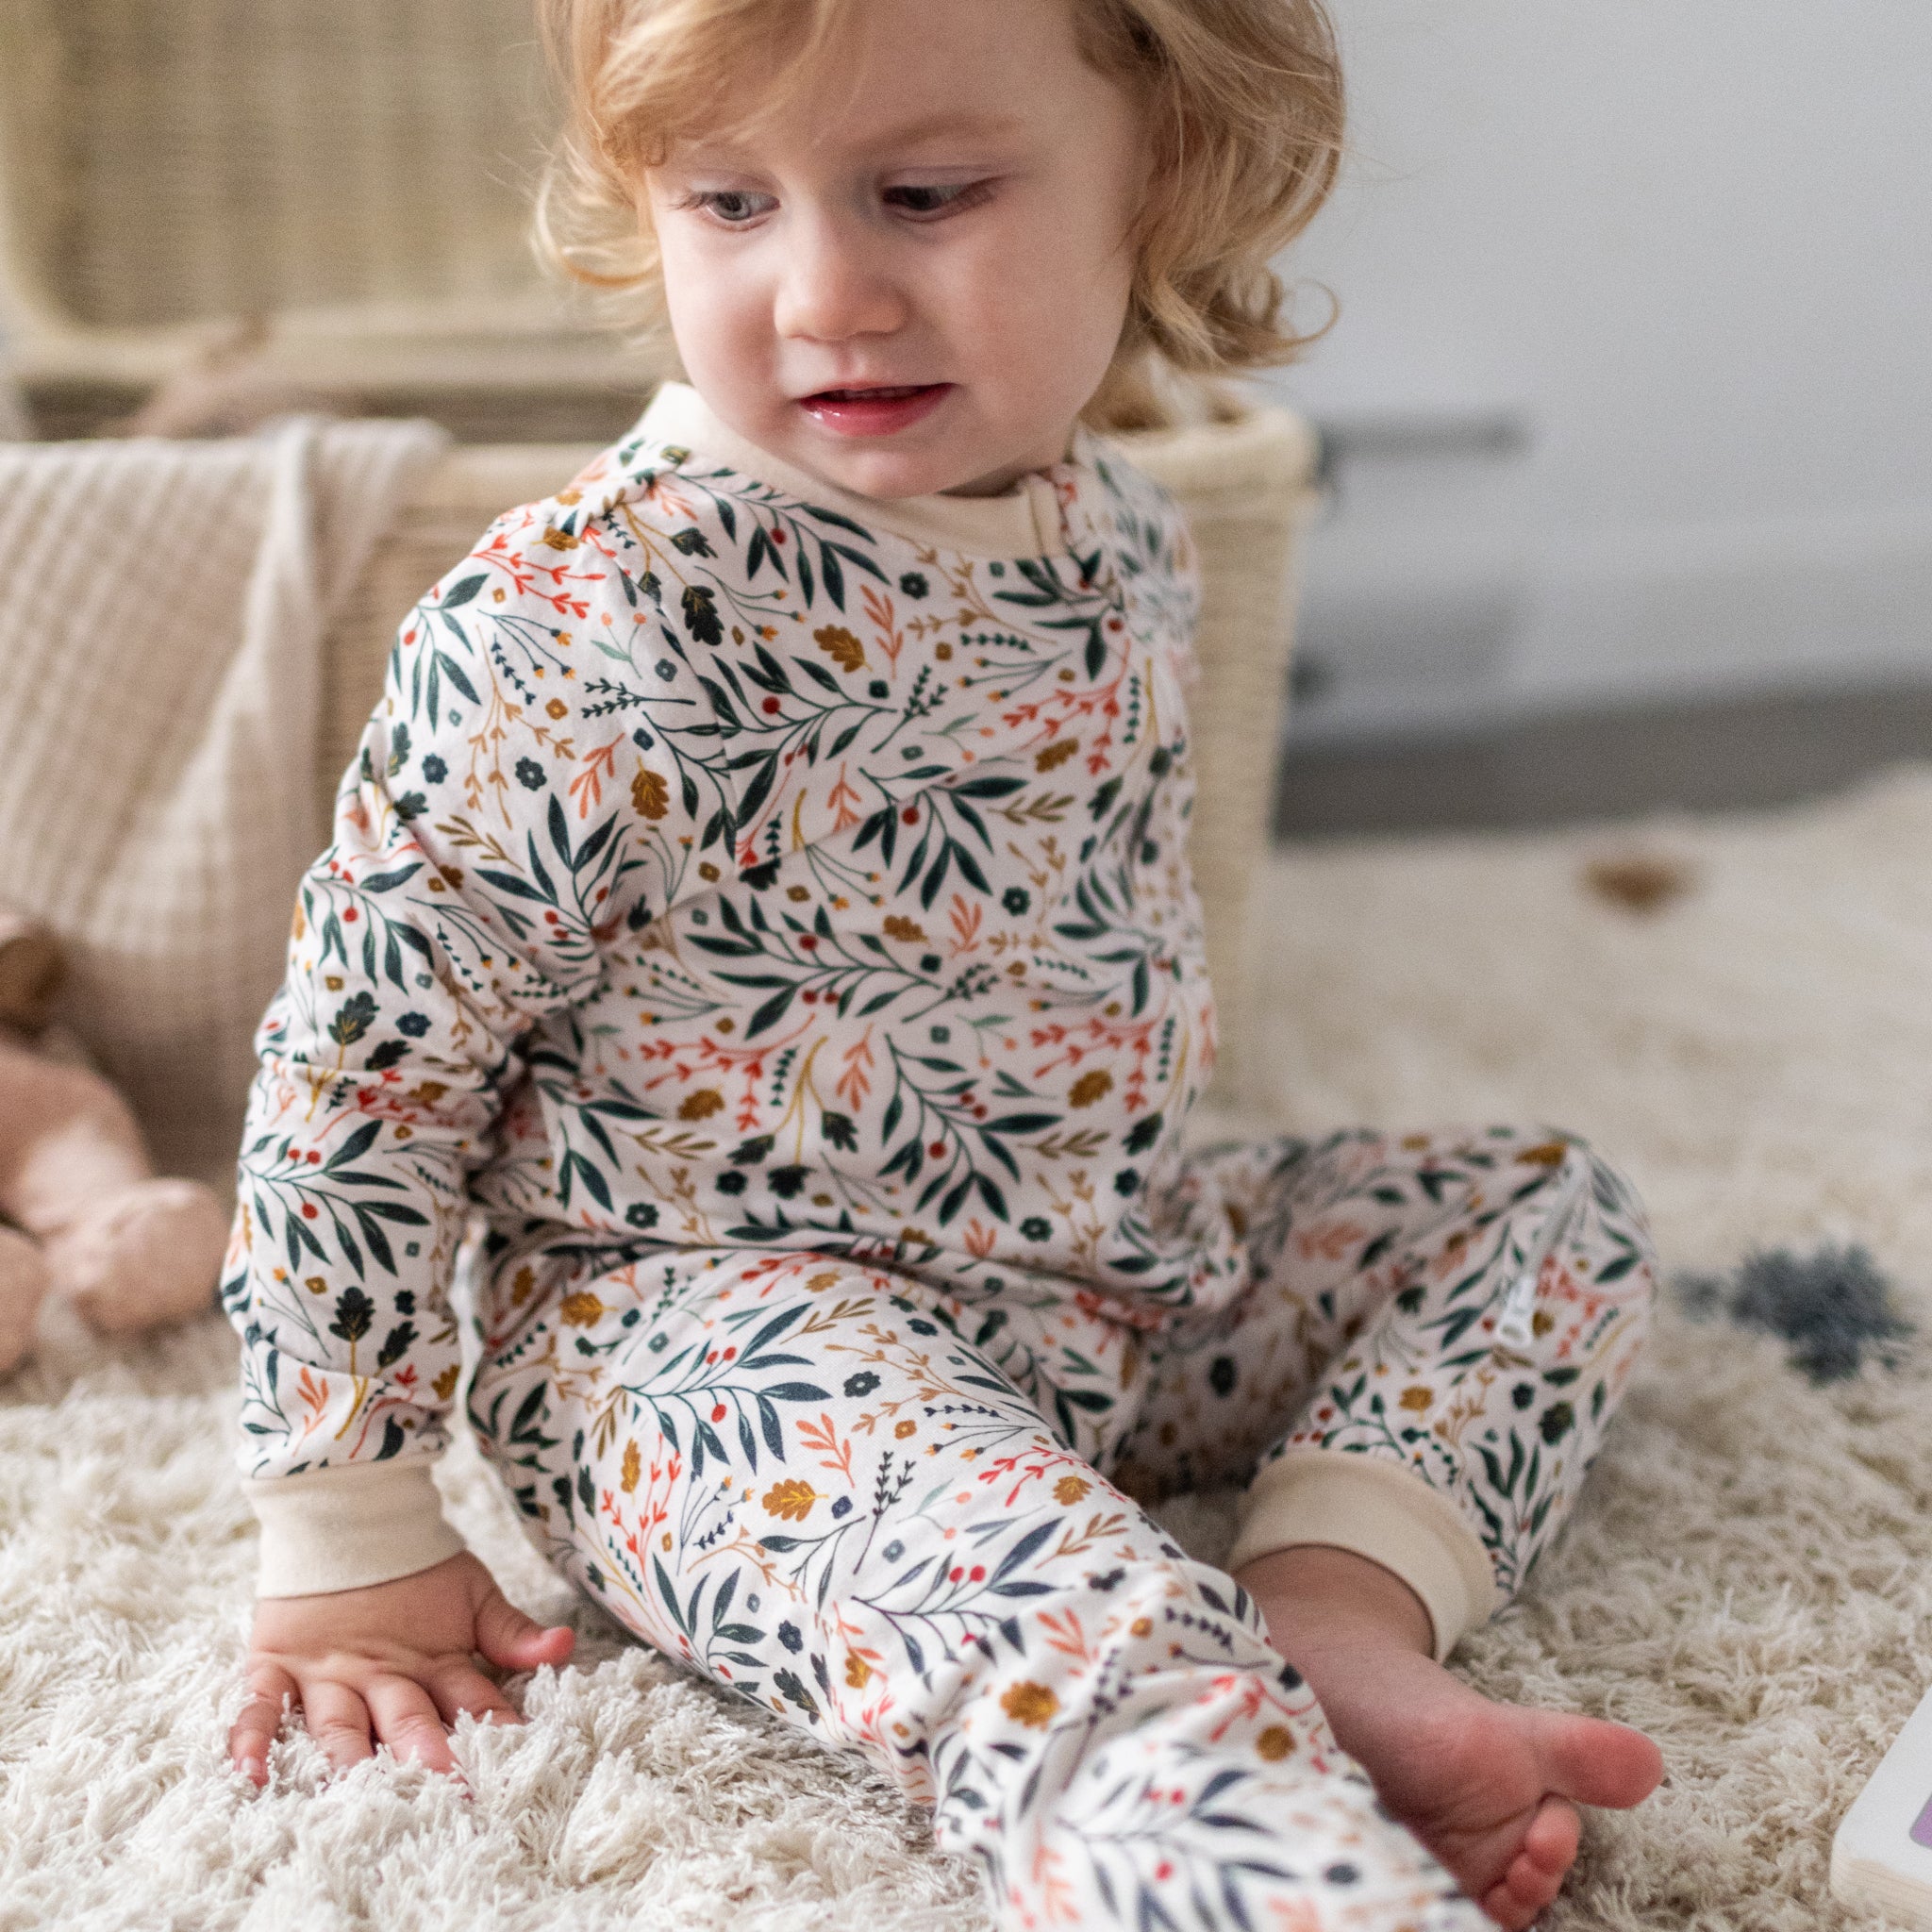 Baby one-piece pajamas - Floral